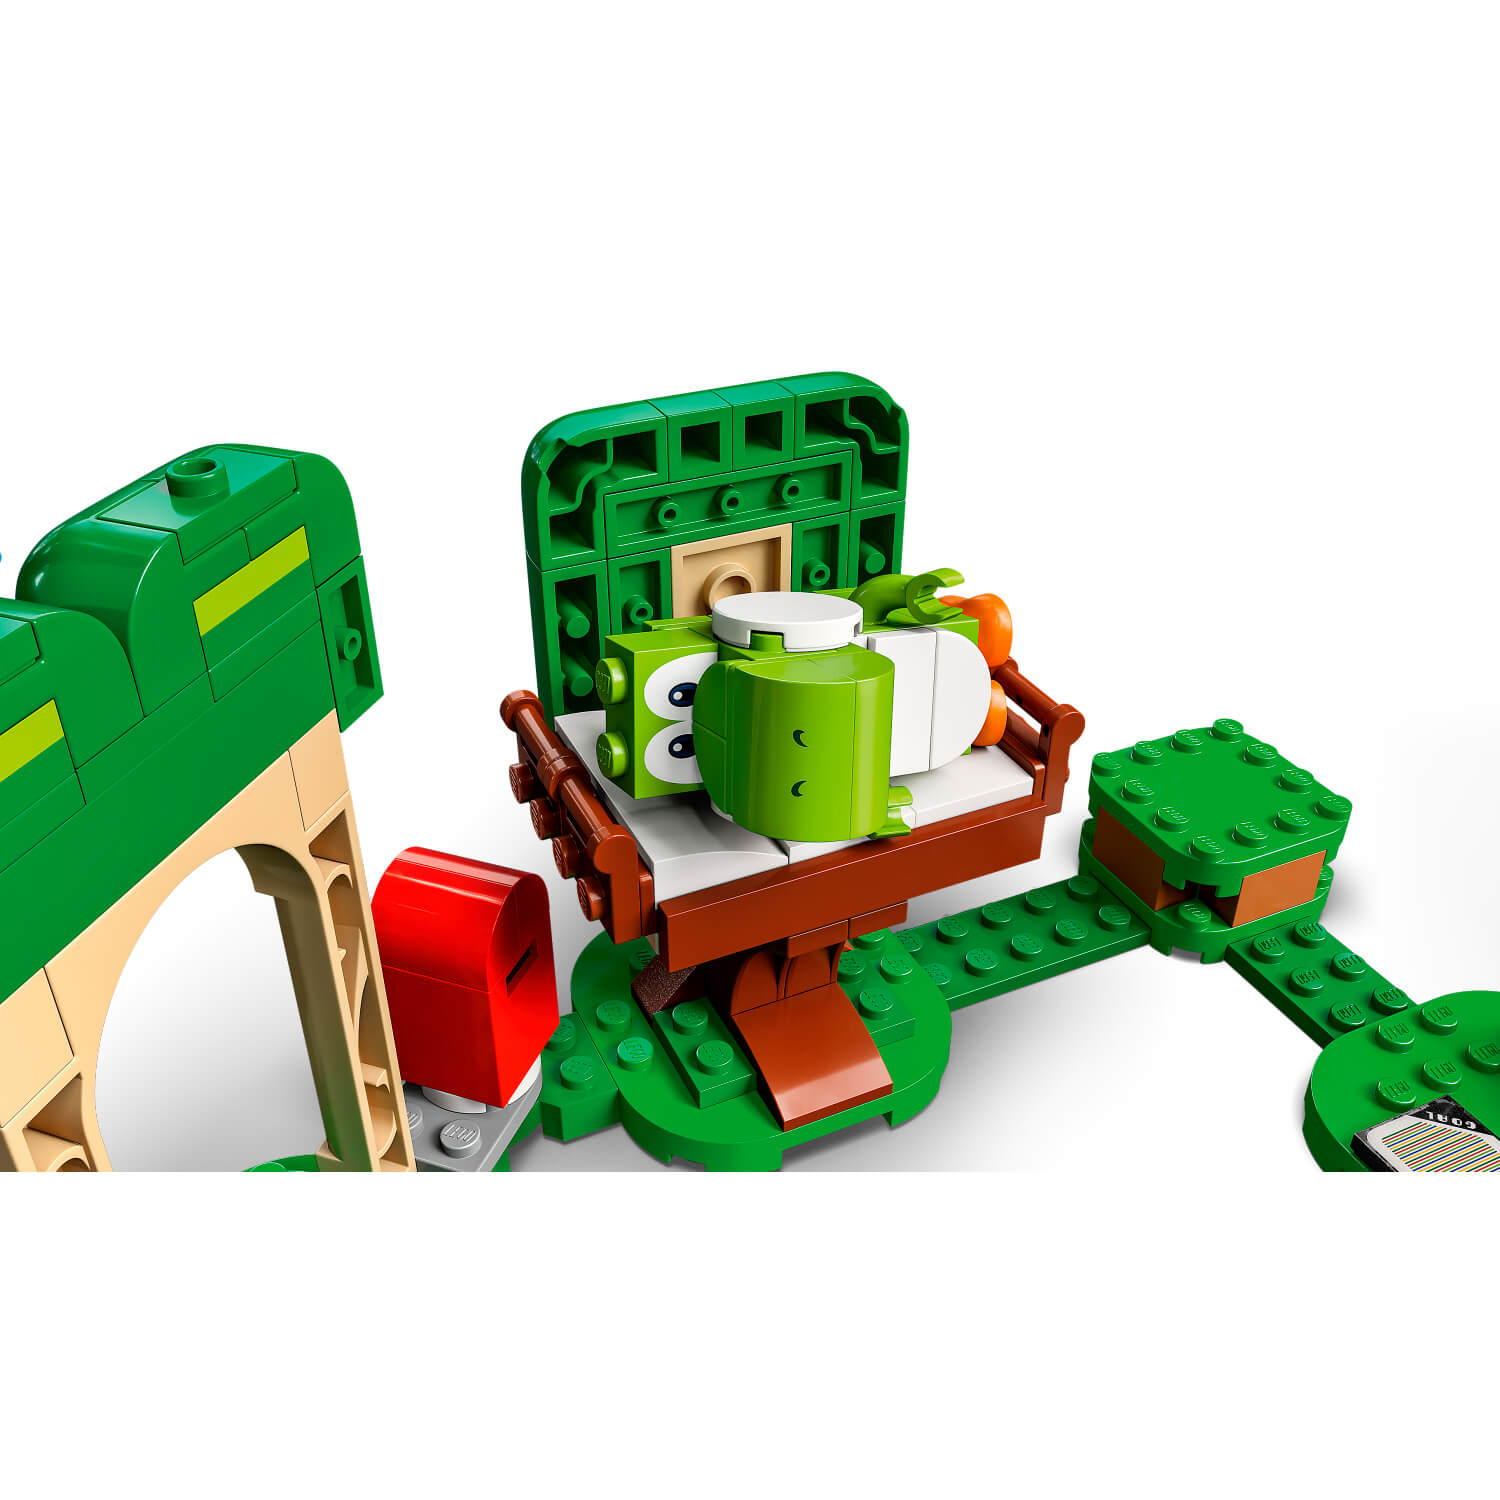 Lego  Yoshi-jeva kuća poklona - komplet za nadogradnju